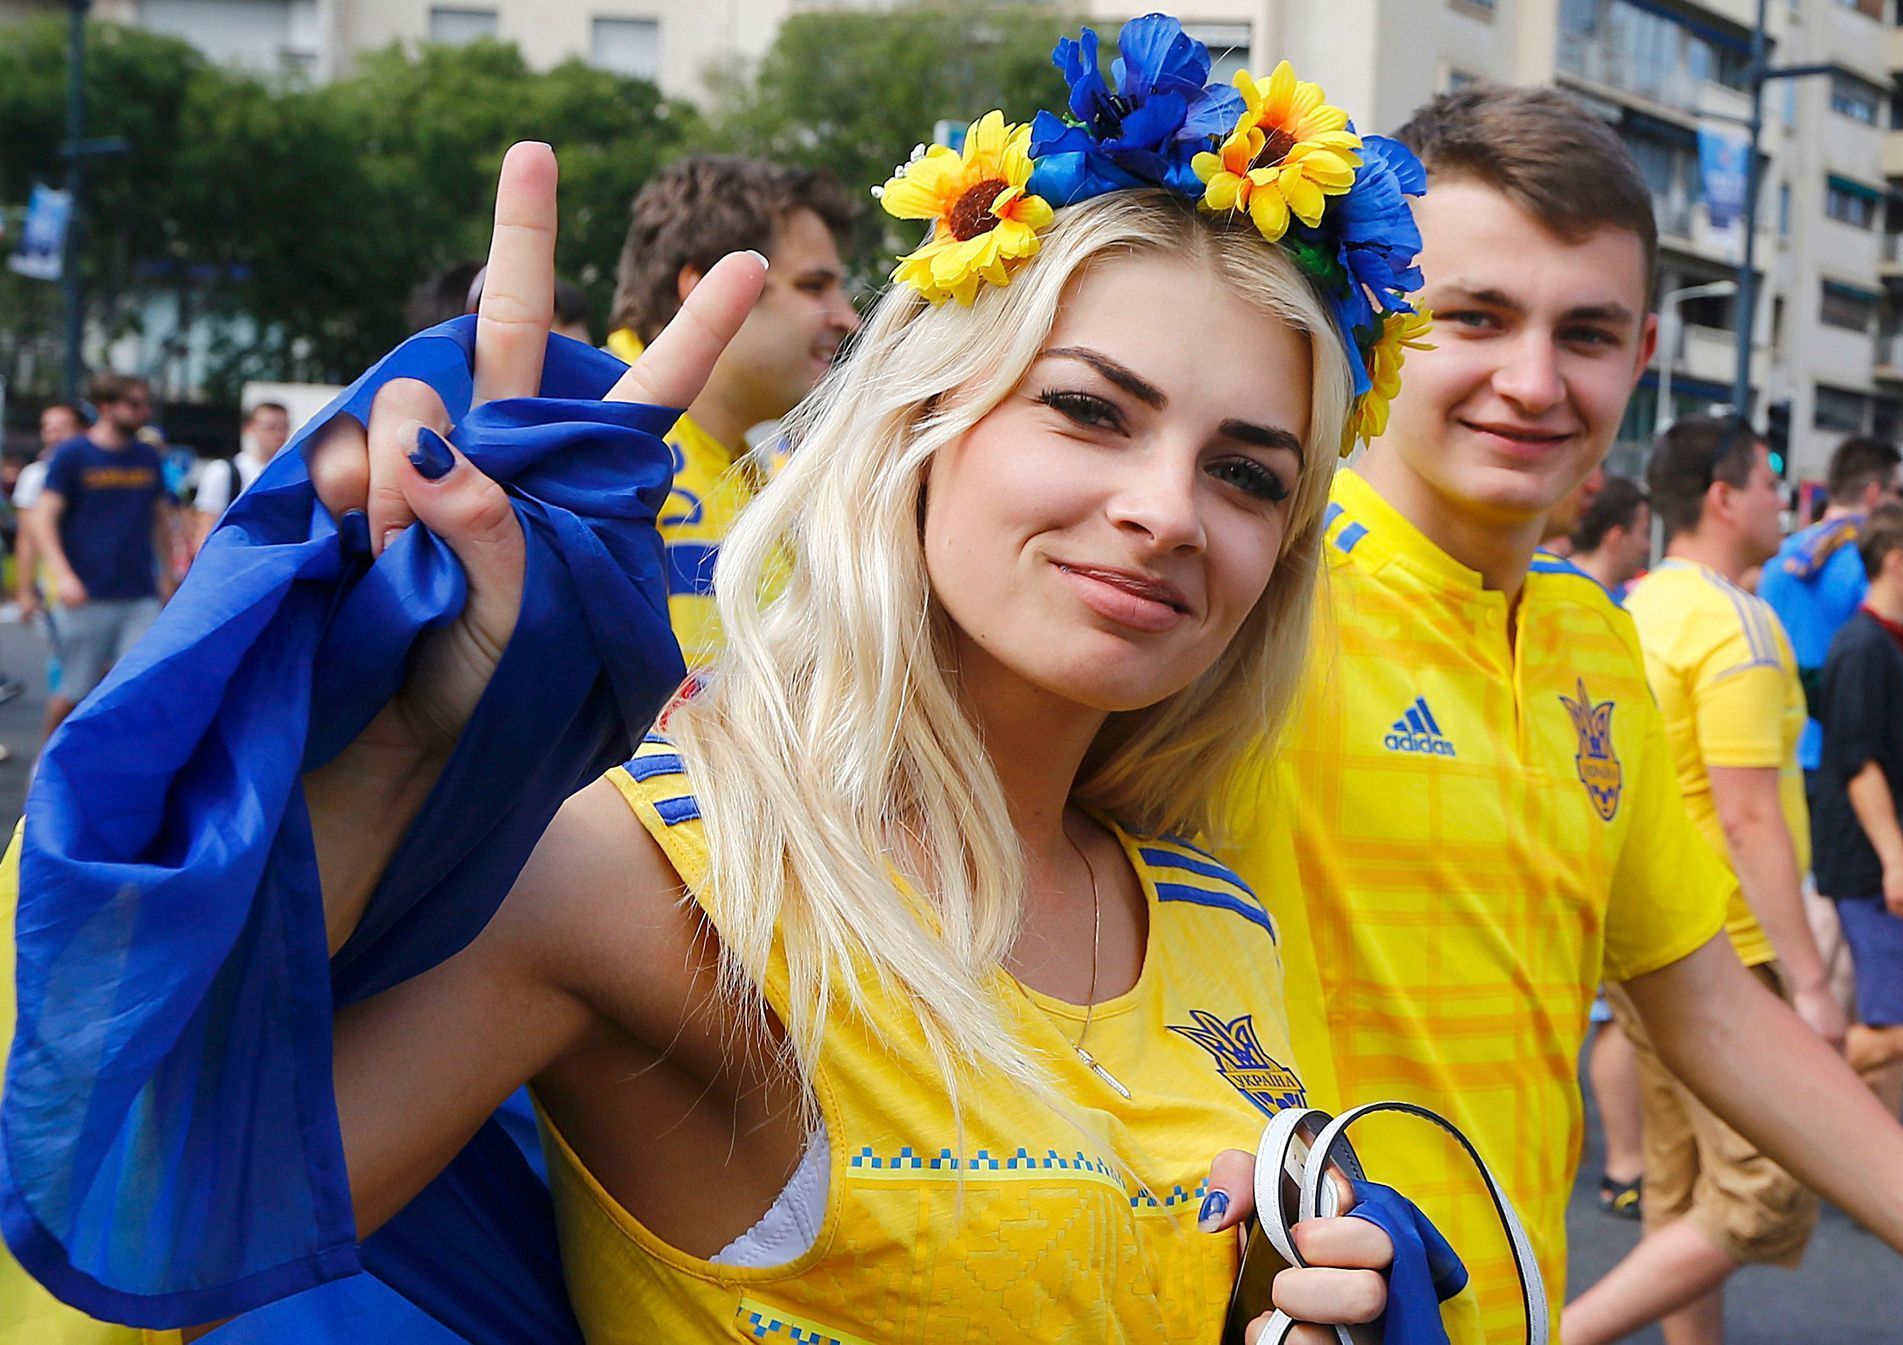 Euro 2016: Ukrajinská fanynka